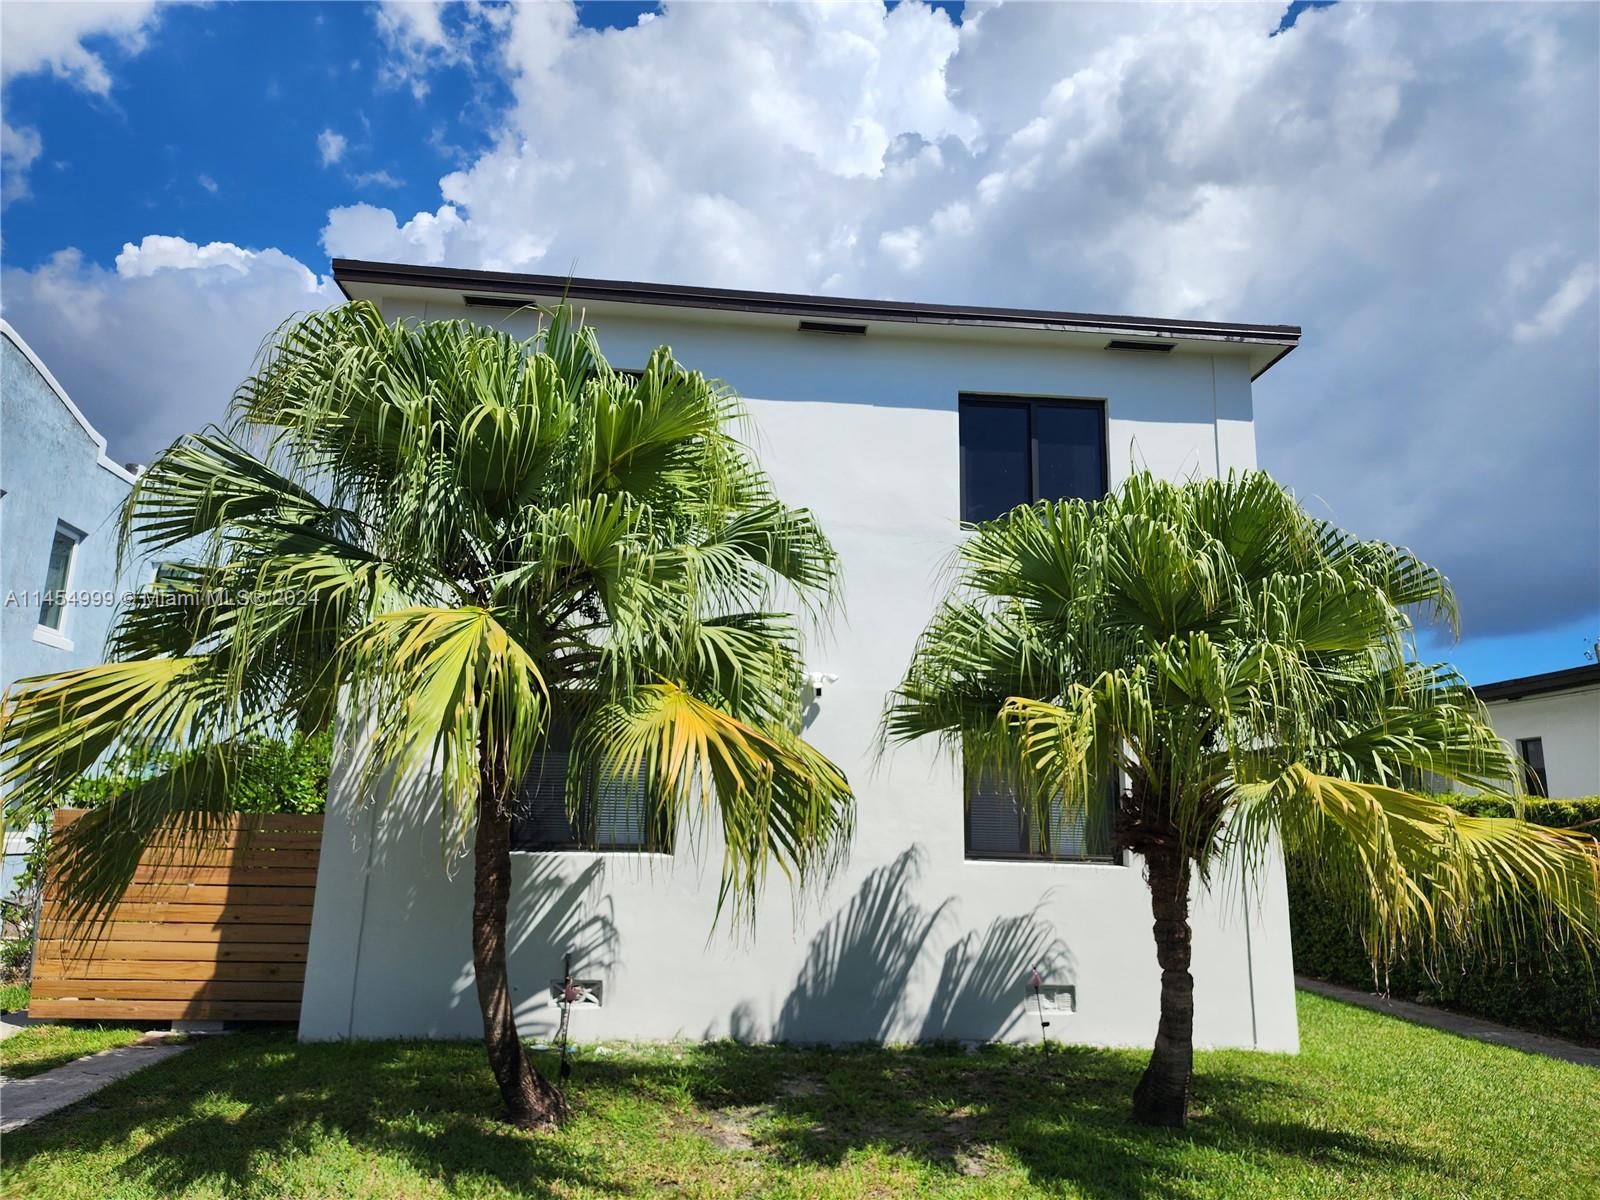 Rental Property at 2141 Sw 14th Ter, Miami, Broward County, Florida -  - $1,749,900 MO.